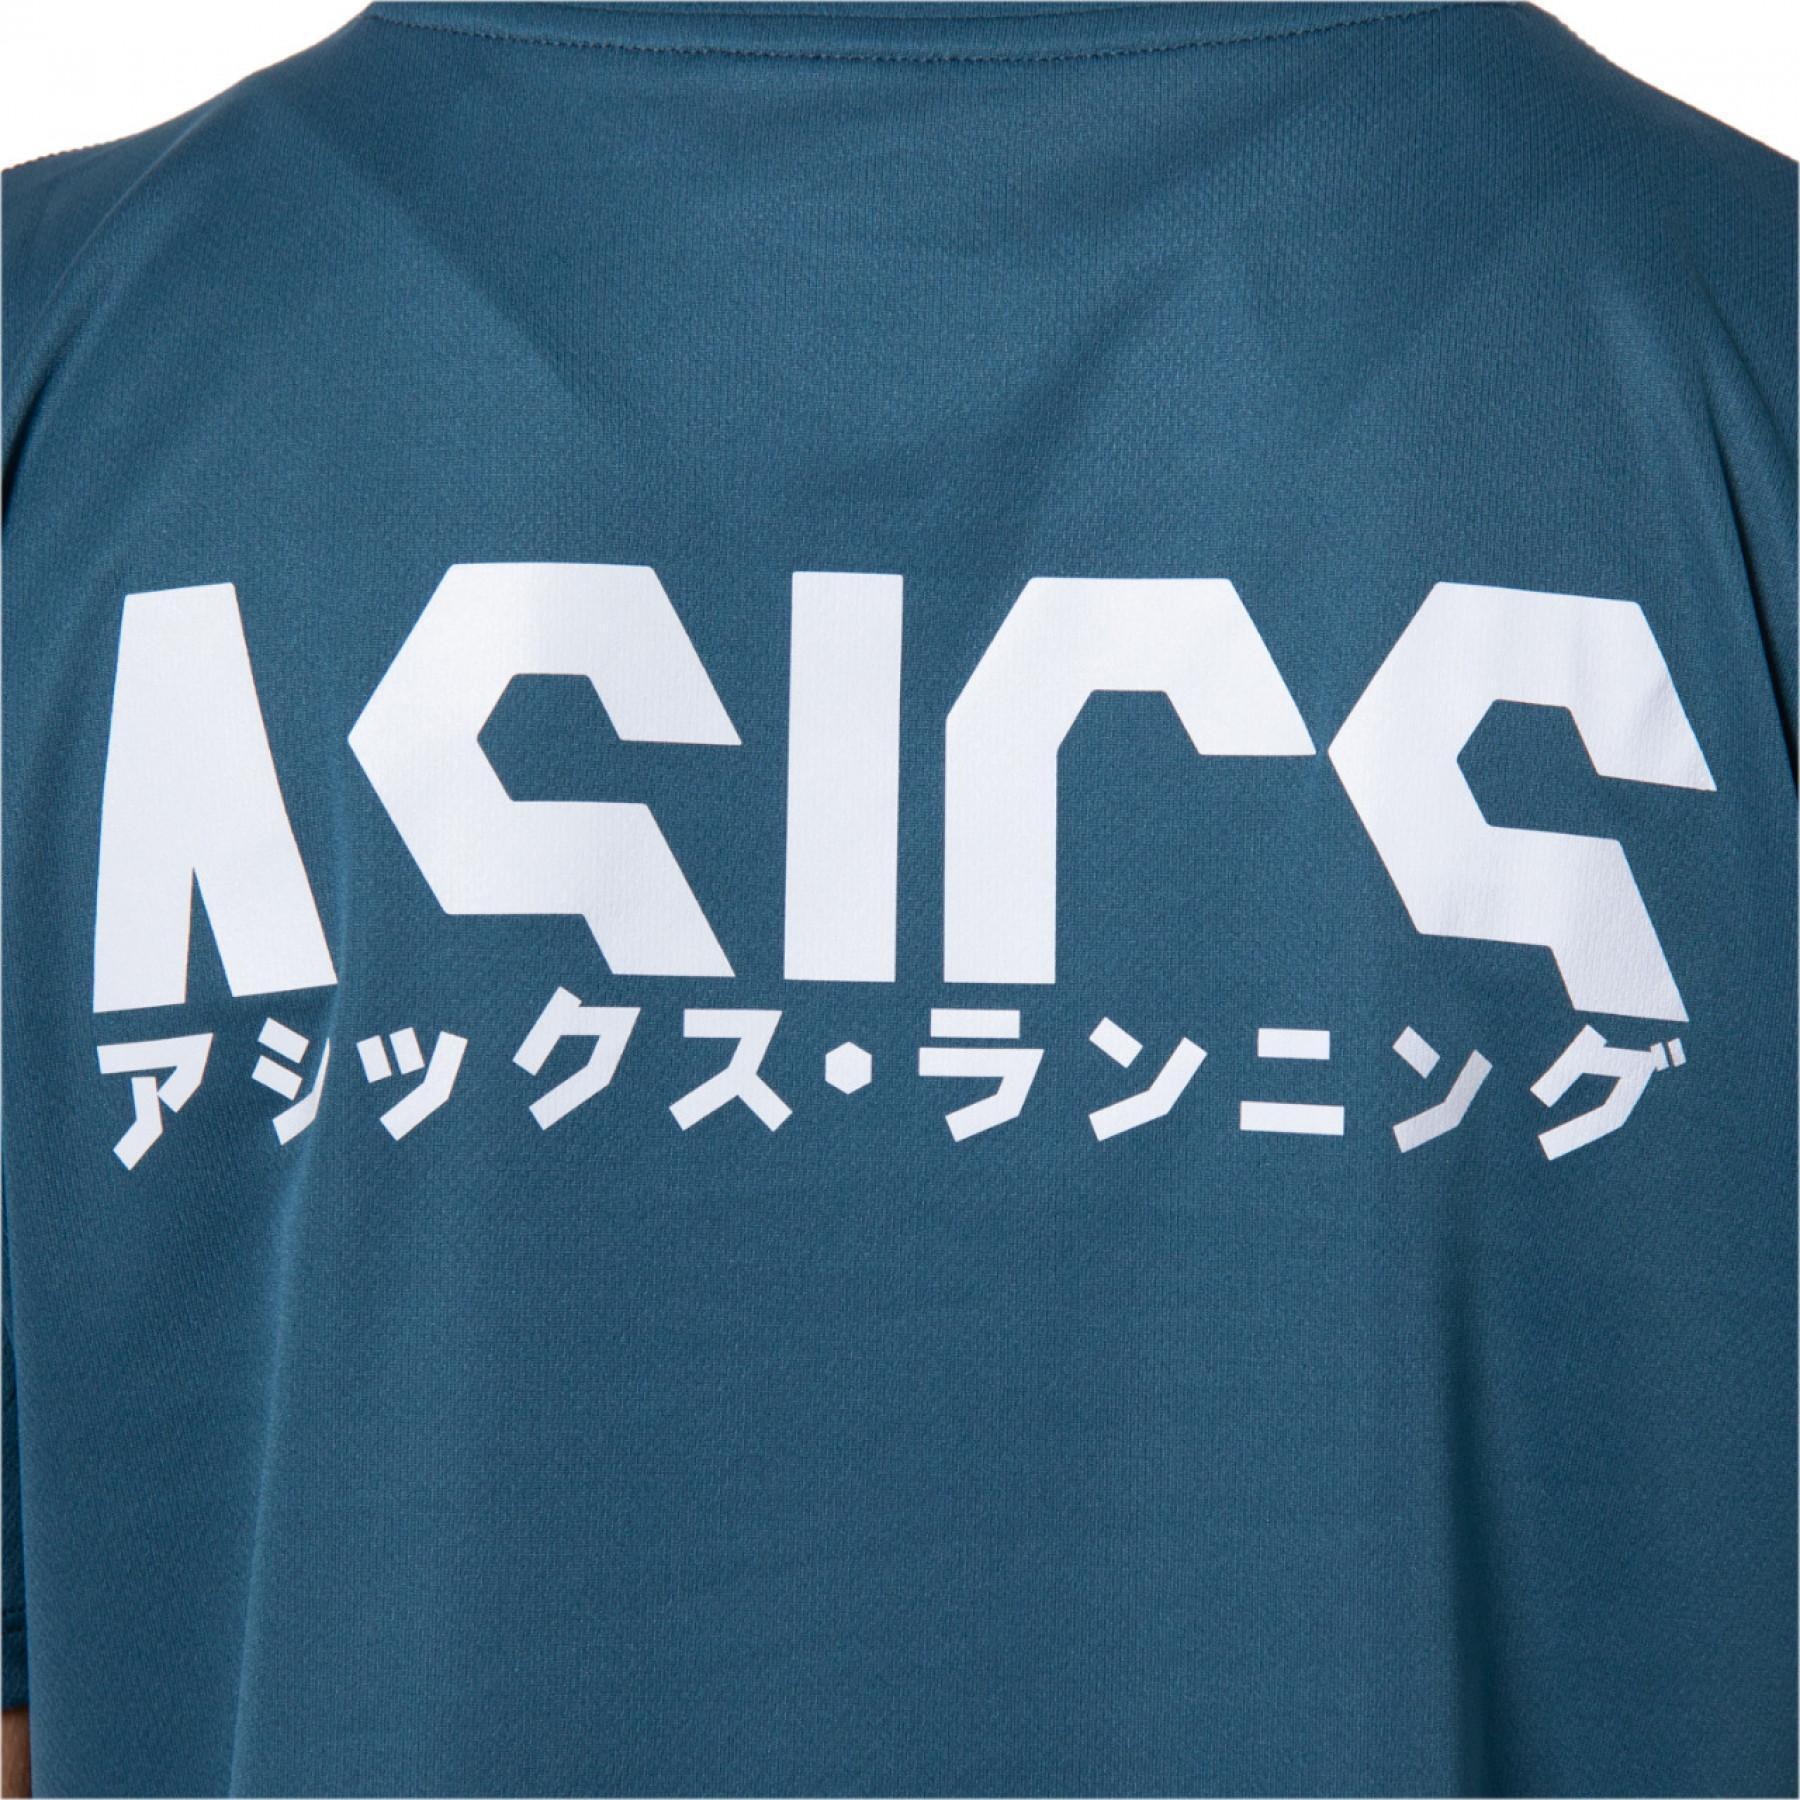 Camiseta feminina Asics Katakana